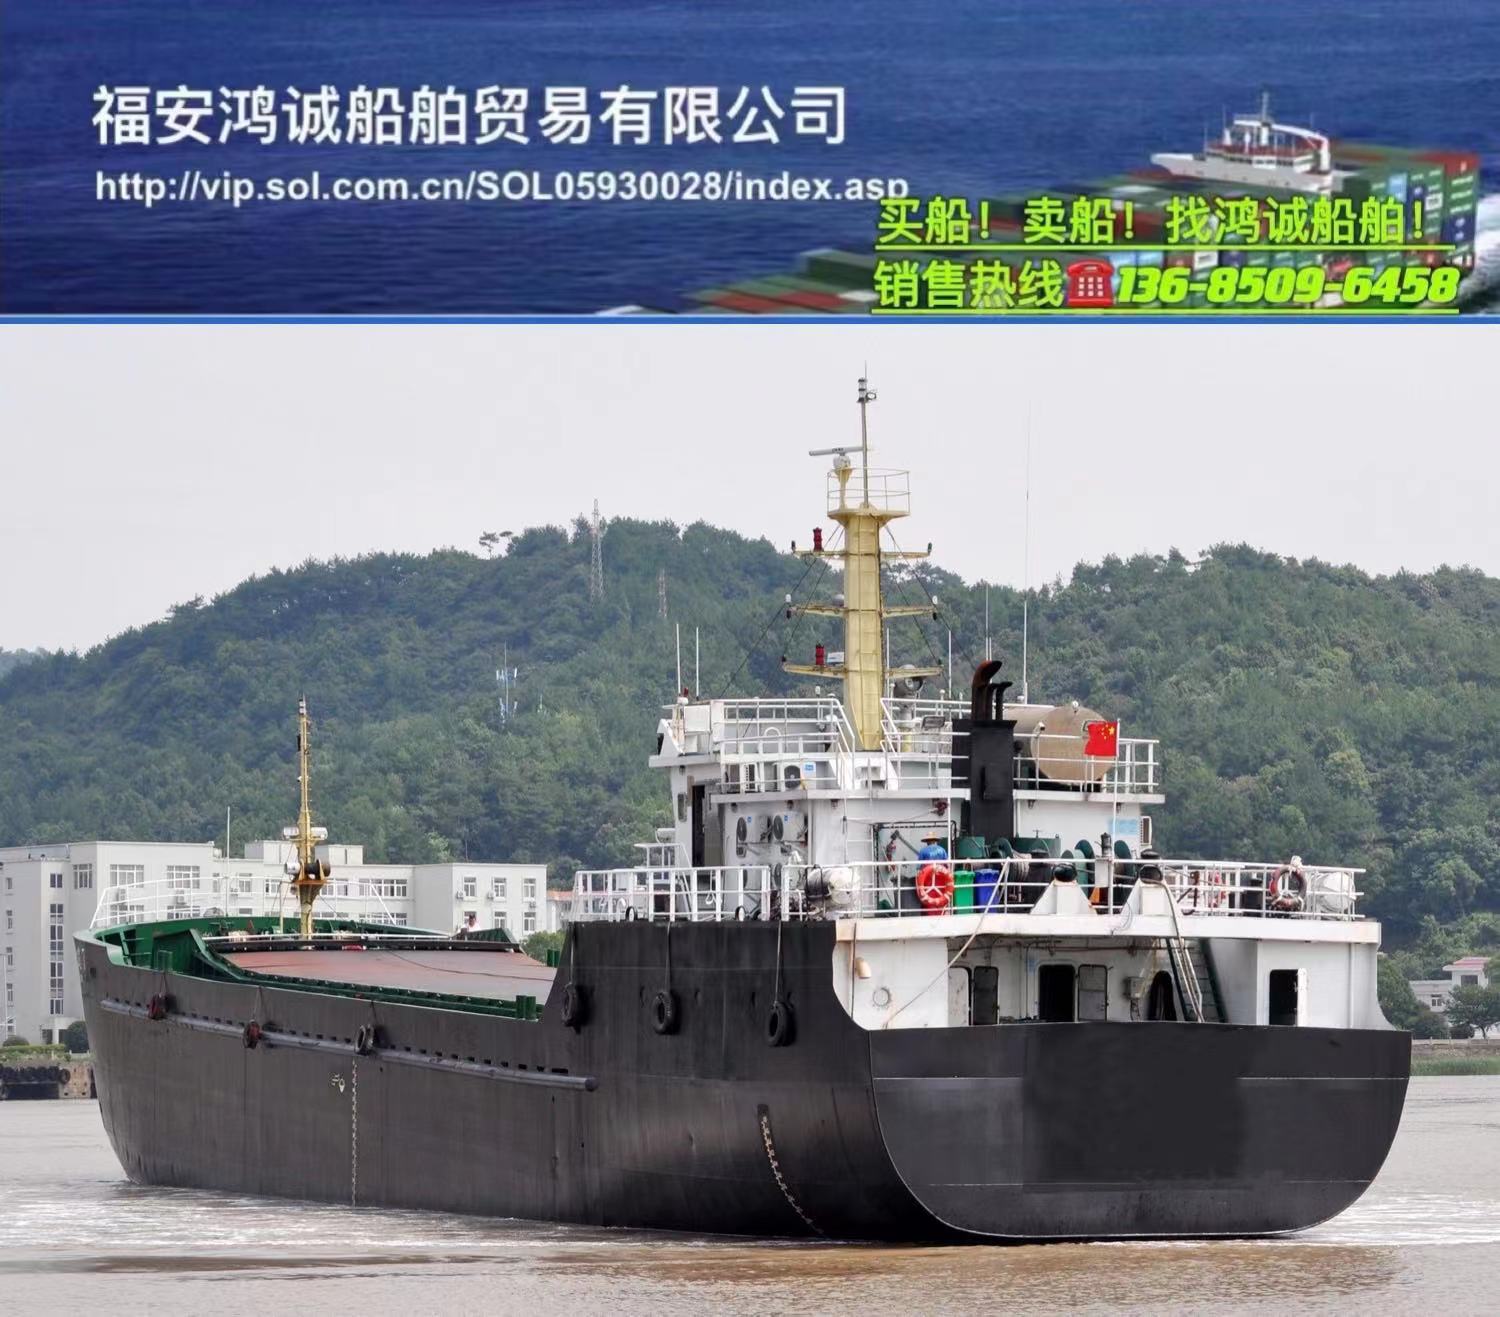 出售实载1800吨散货船： 2020年12月江苏连云港建造/